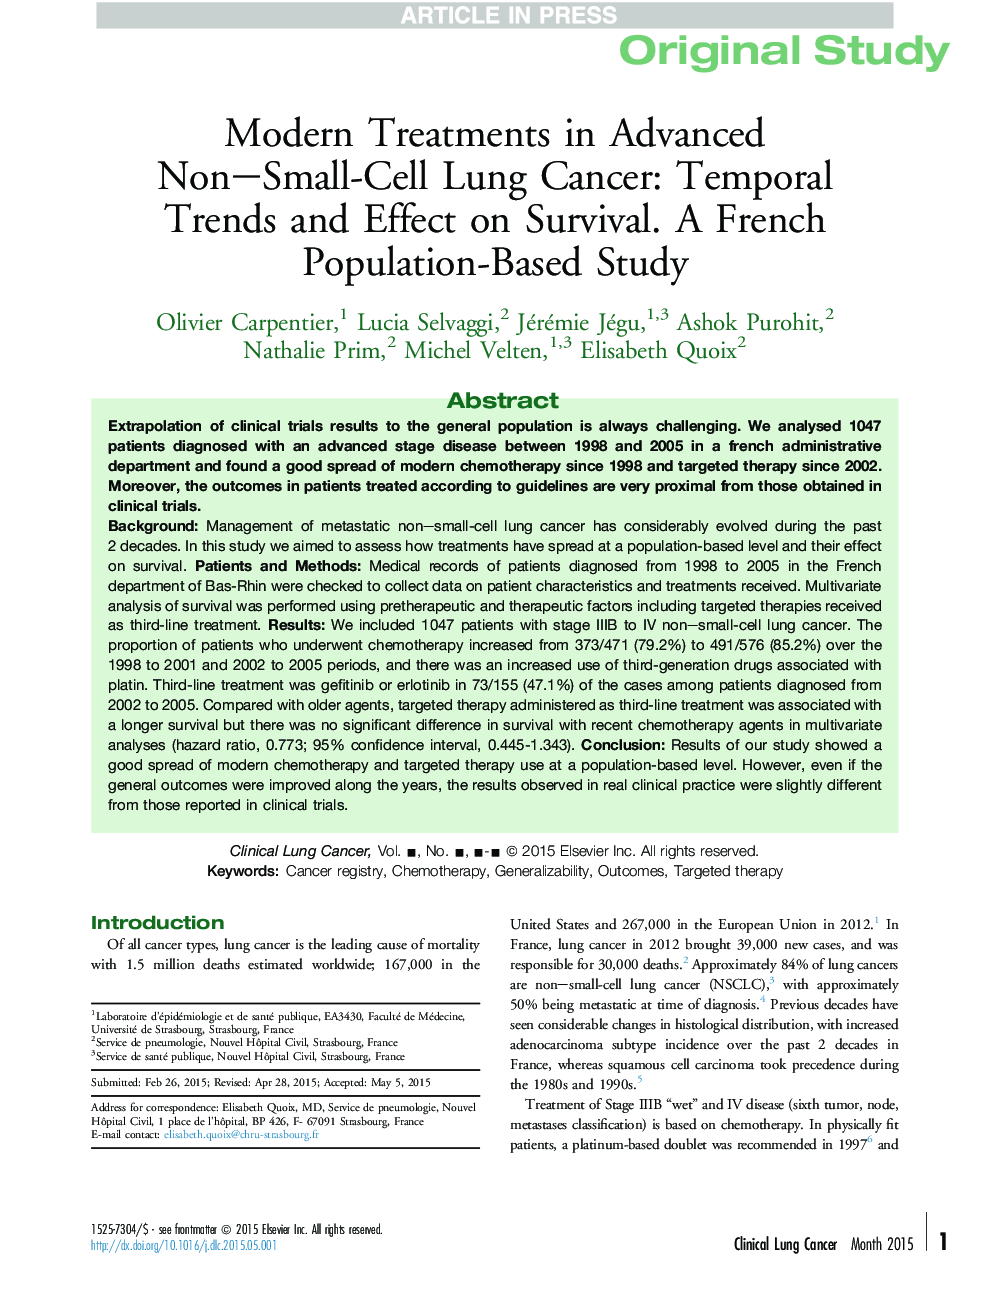 درمان های مدرن در پیشرفته سرطان ریه های غیر سلولی کوچک: روند مدرن و تاثیر بر بقا. یک مطالعه مبتنی بر جمعیت فرانسه 